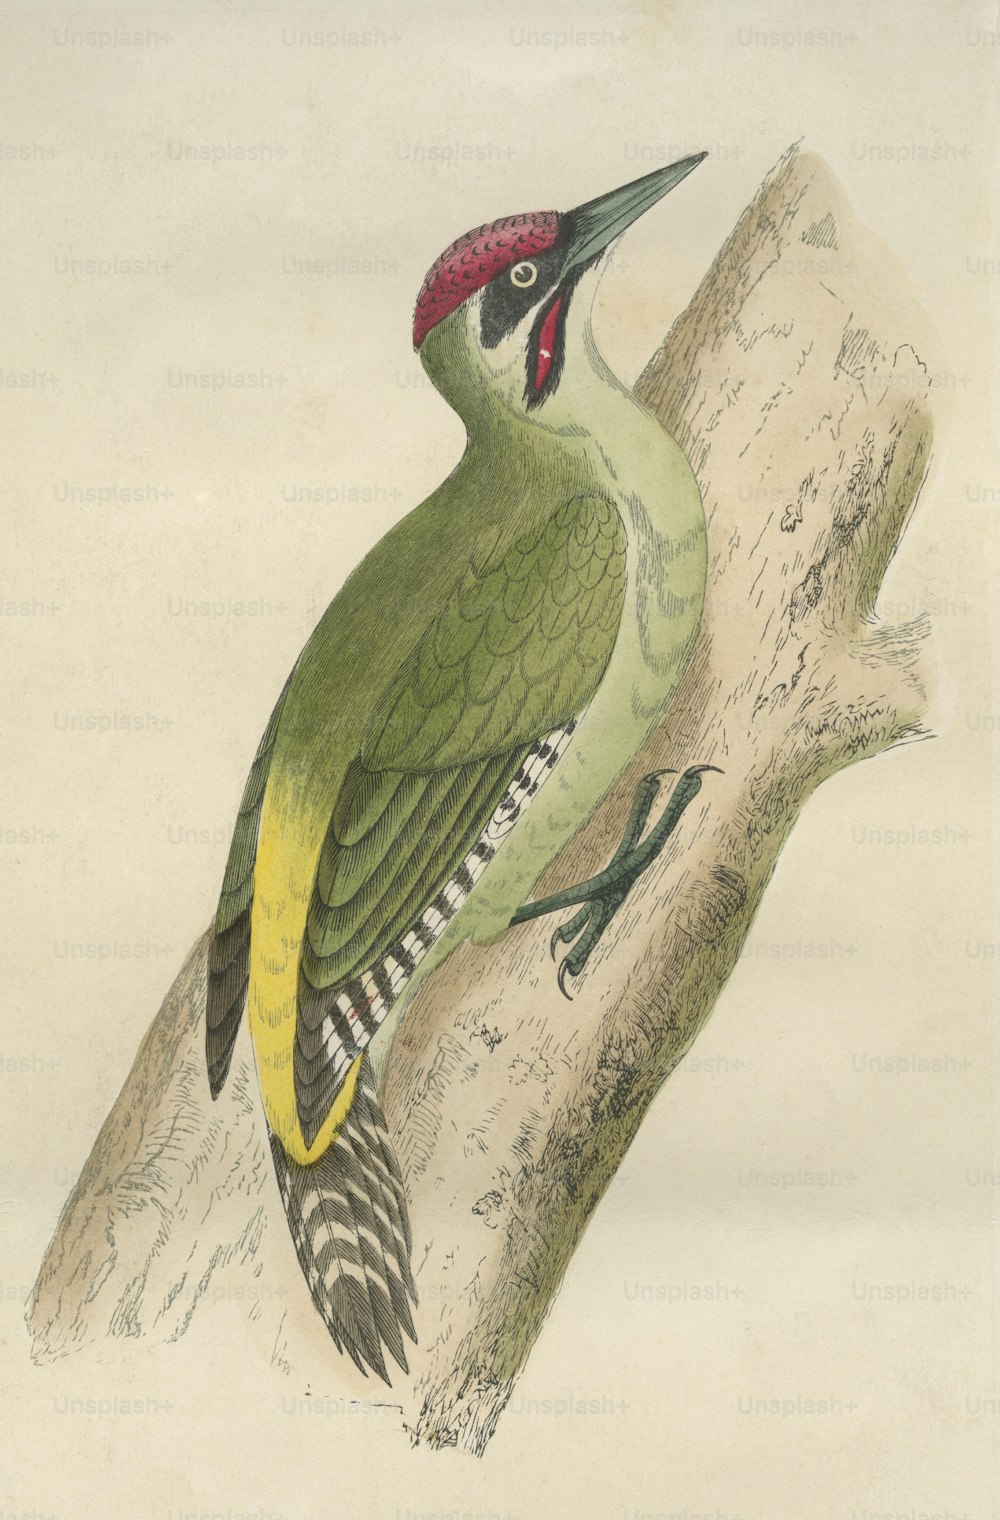 Un pájaro carpintero verde, alrededor de 1800. (Foto de Hulton Archive/Getty Images)